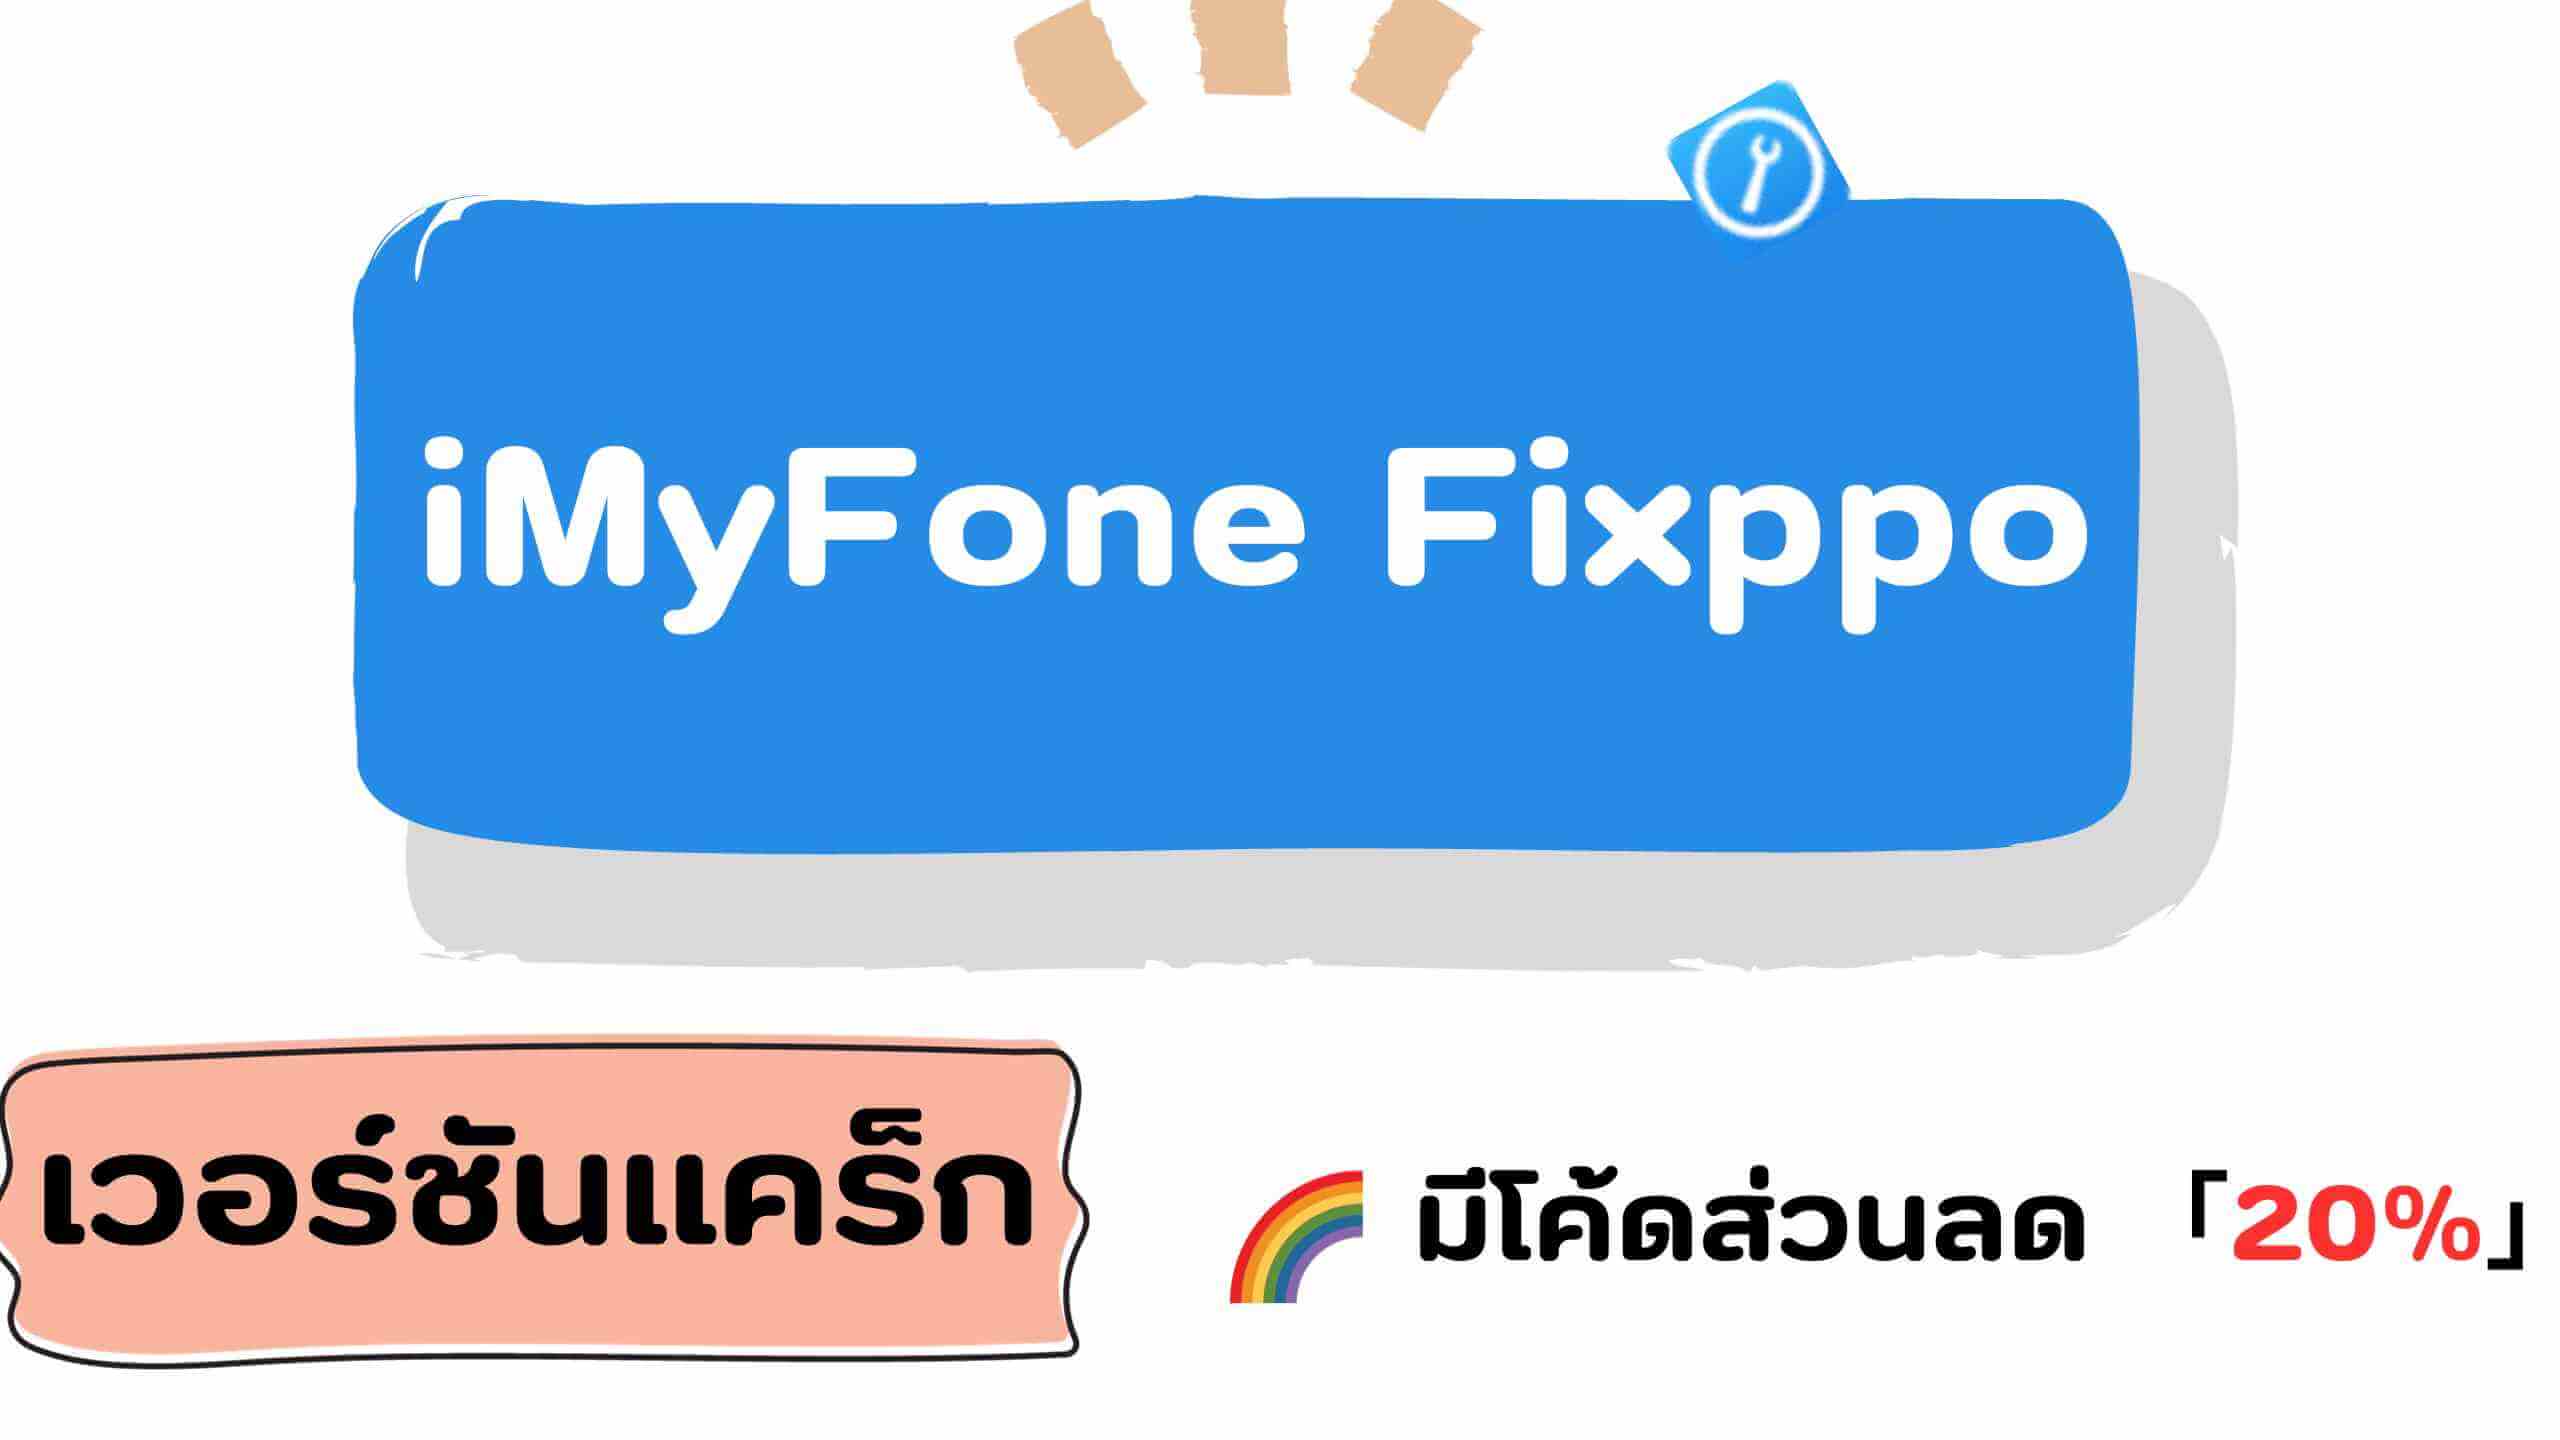 iMyFone Fixppo Full Crack มีจริงหรือ? เข้ามารับรหัสลงทะเบียนได้ฟรี!